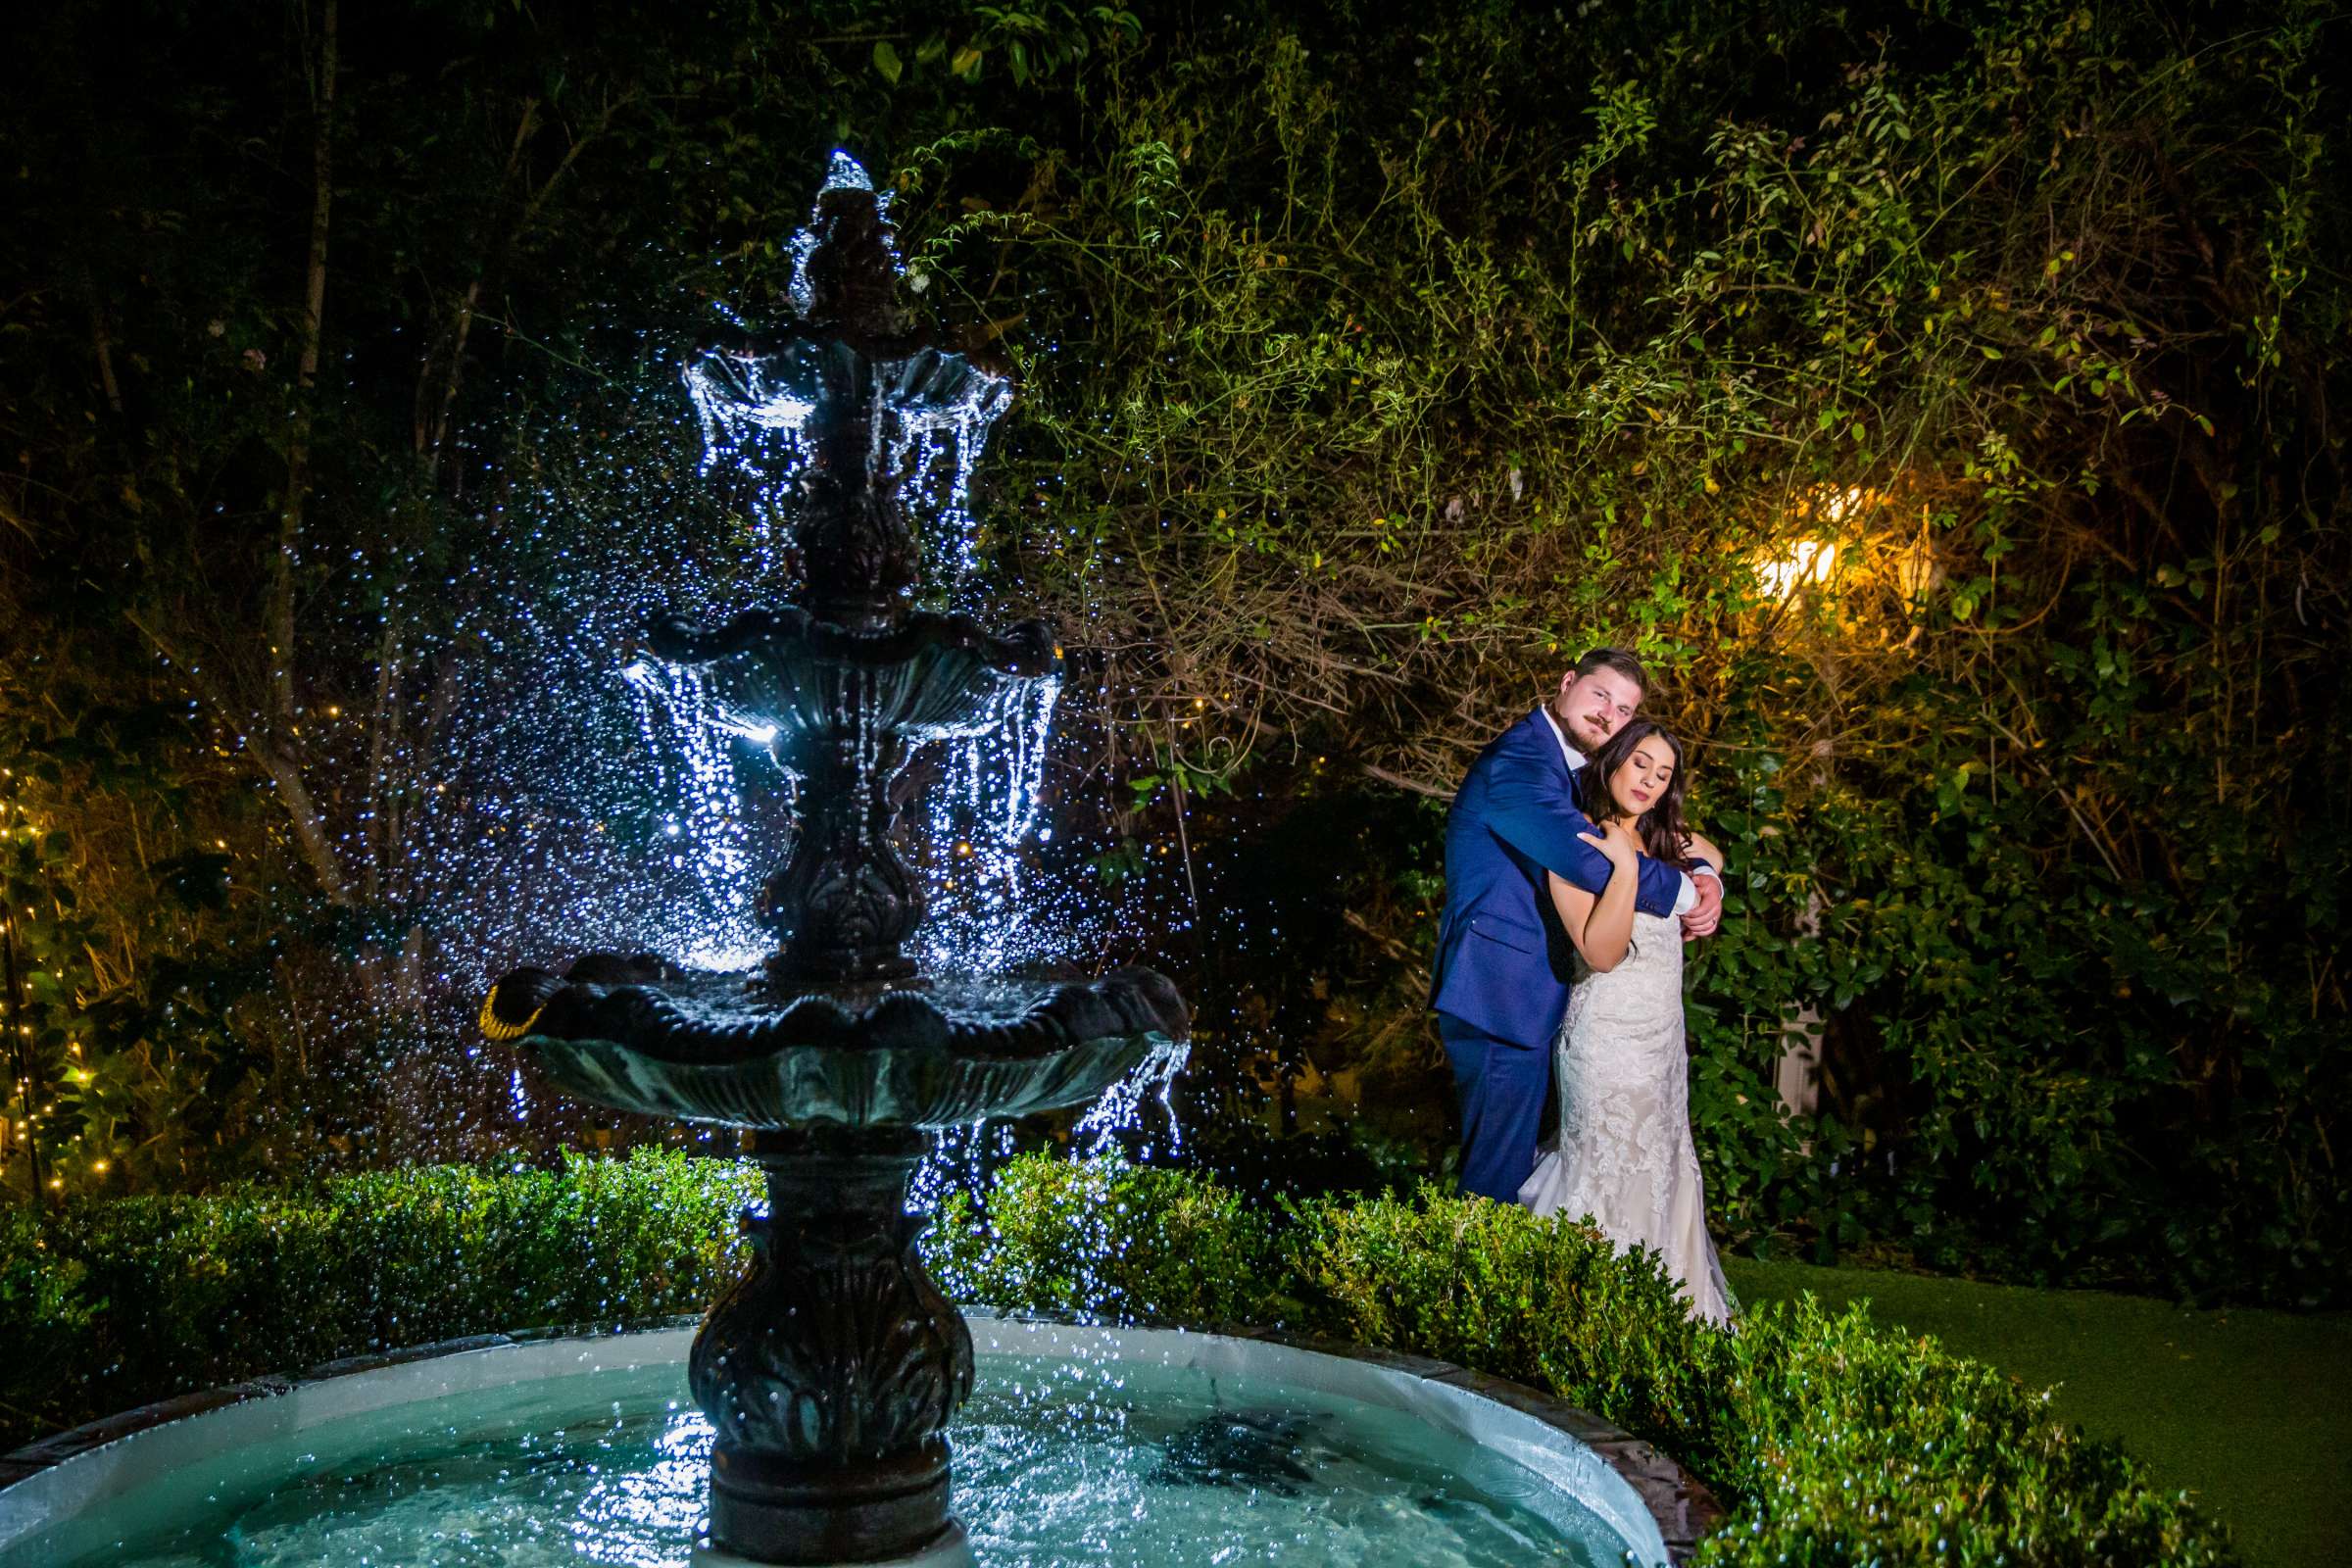 Twin Oaks House & Gardens Wedding Estate Wedding, Stephanie and Ilija Wedding Photo #160 by True Photography